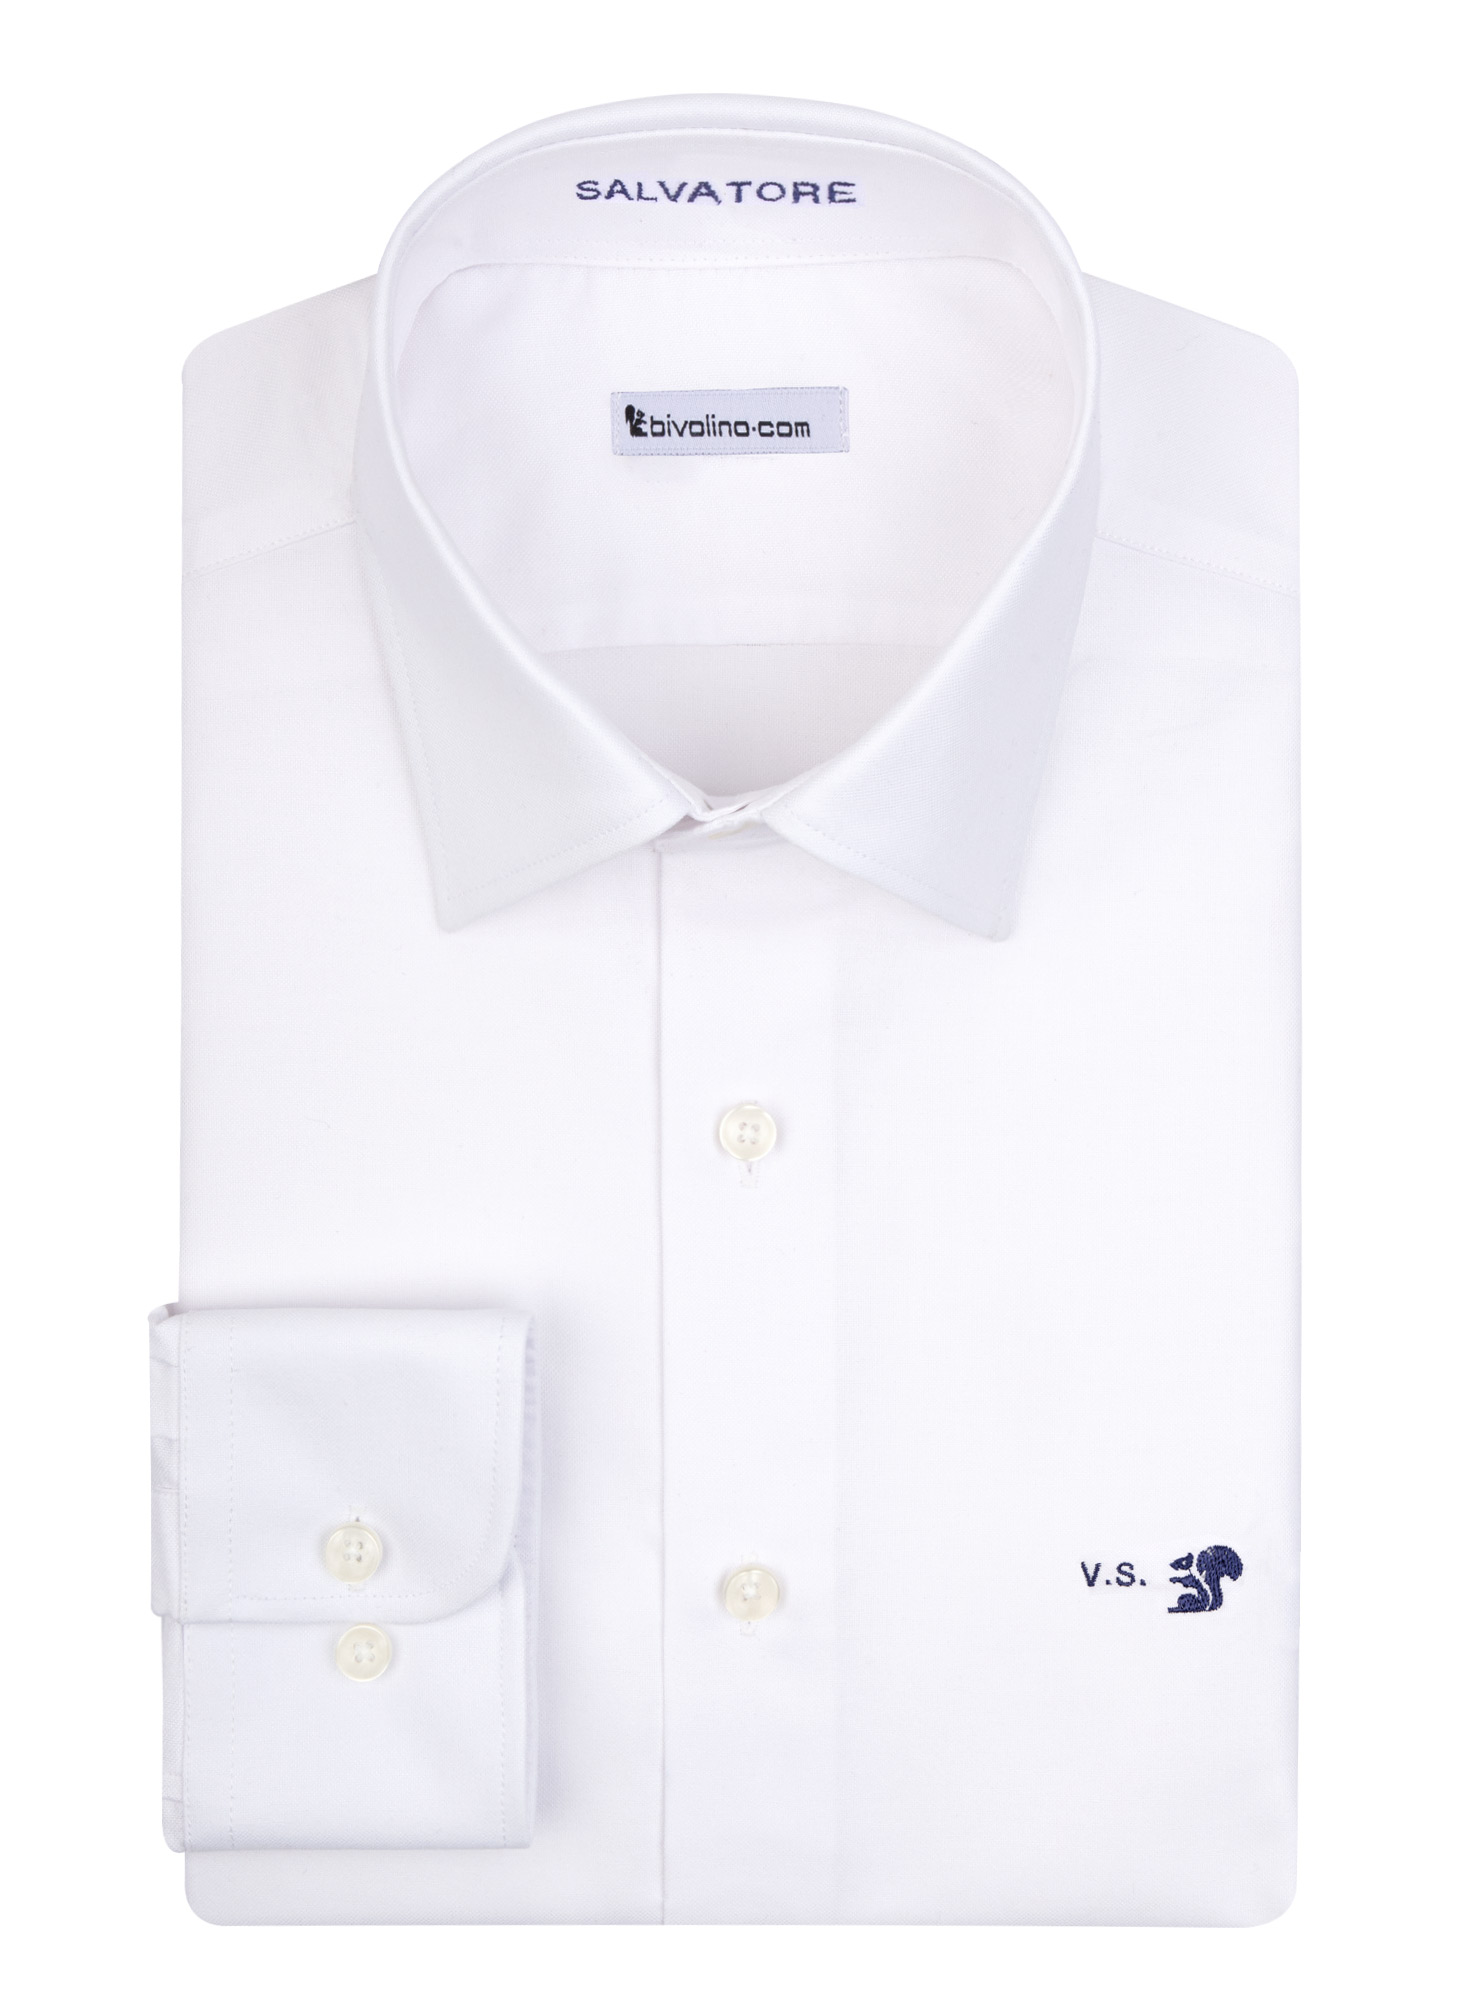 VICENZA - Pinpoint cot-pes white shirt - GADA 1